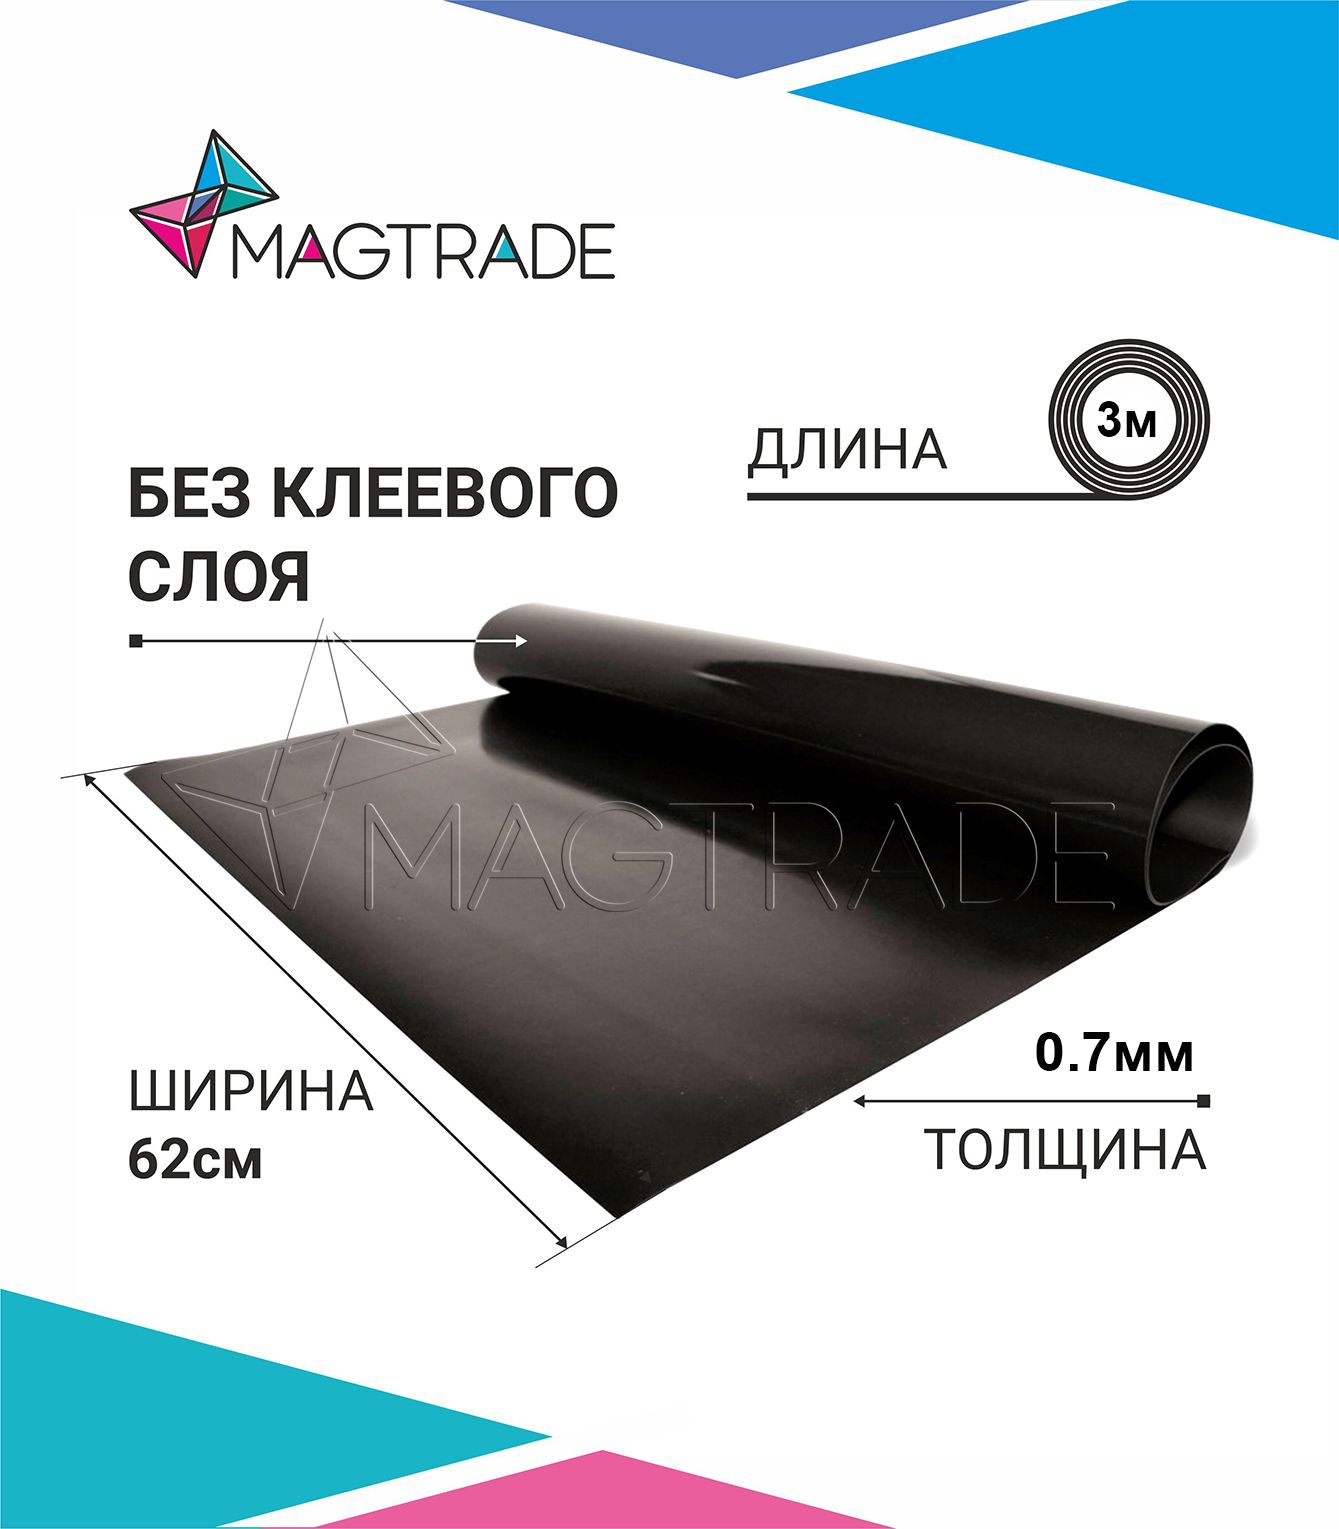 Магнитный винил MAGTRADE без клеевого слоя 0,62 х 3 м, толщина 0,7 мм, лист 3 метра магнитный винил magtrade с клеем толщина 0 9 мм лист 5м